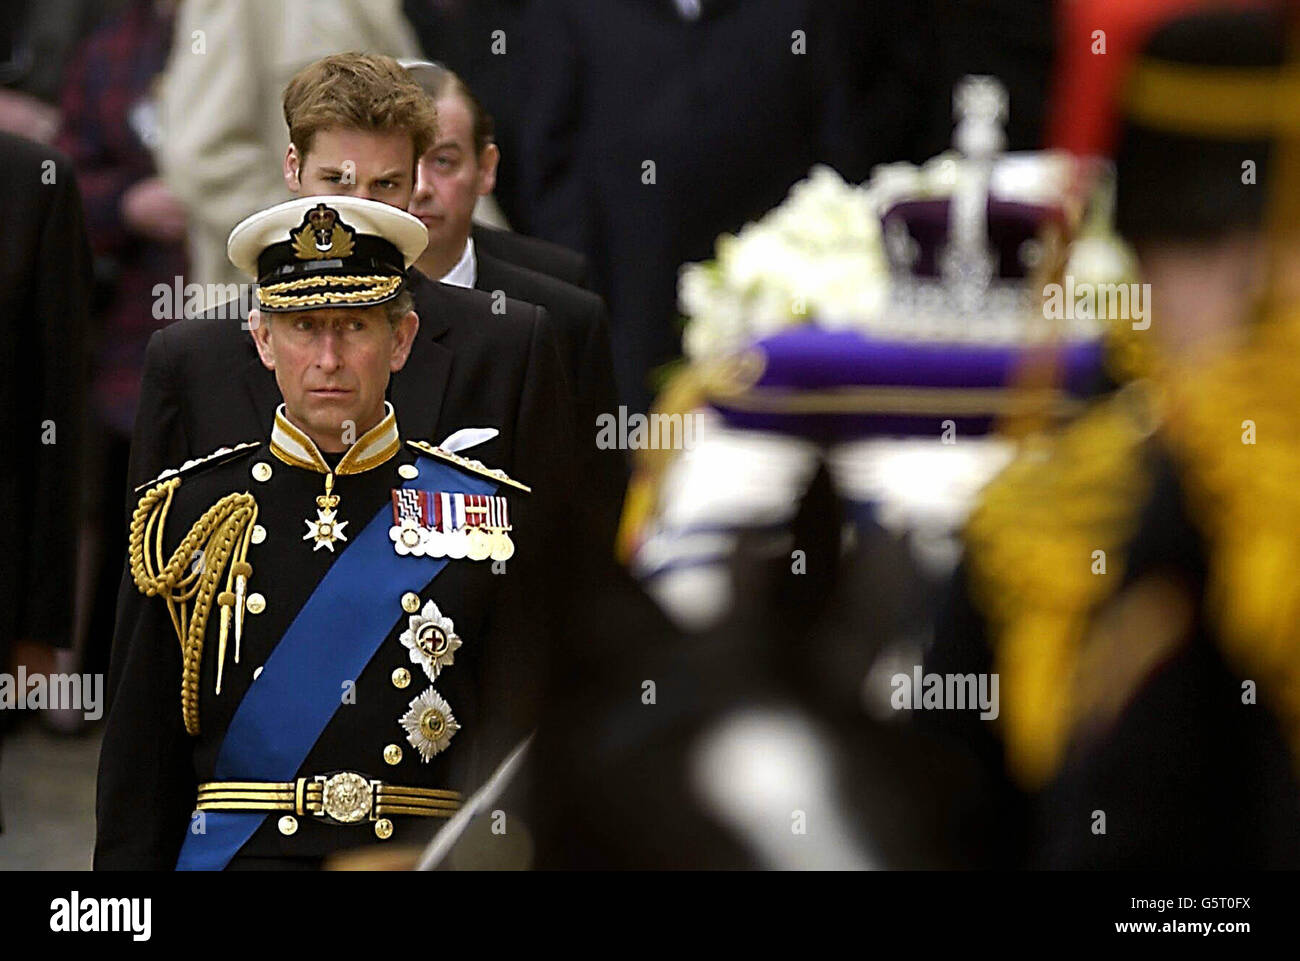 Le prince de Galles regarde le cercueil de la reine mère lorsqu'il sort du Westminster Hall à Londres à bord d'une voiture à canon, pour la cérémonie funéraire à l'abbaye de Westminster.Après le service, la mère Qeen sera enterrée au château de Windsor. Banque D'Images